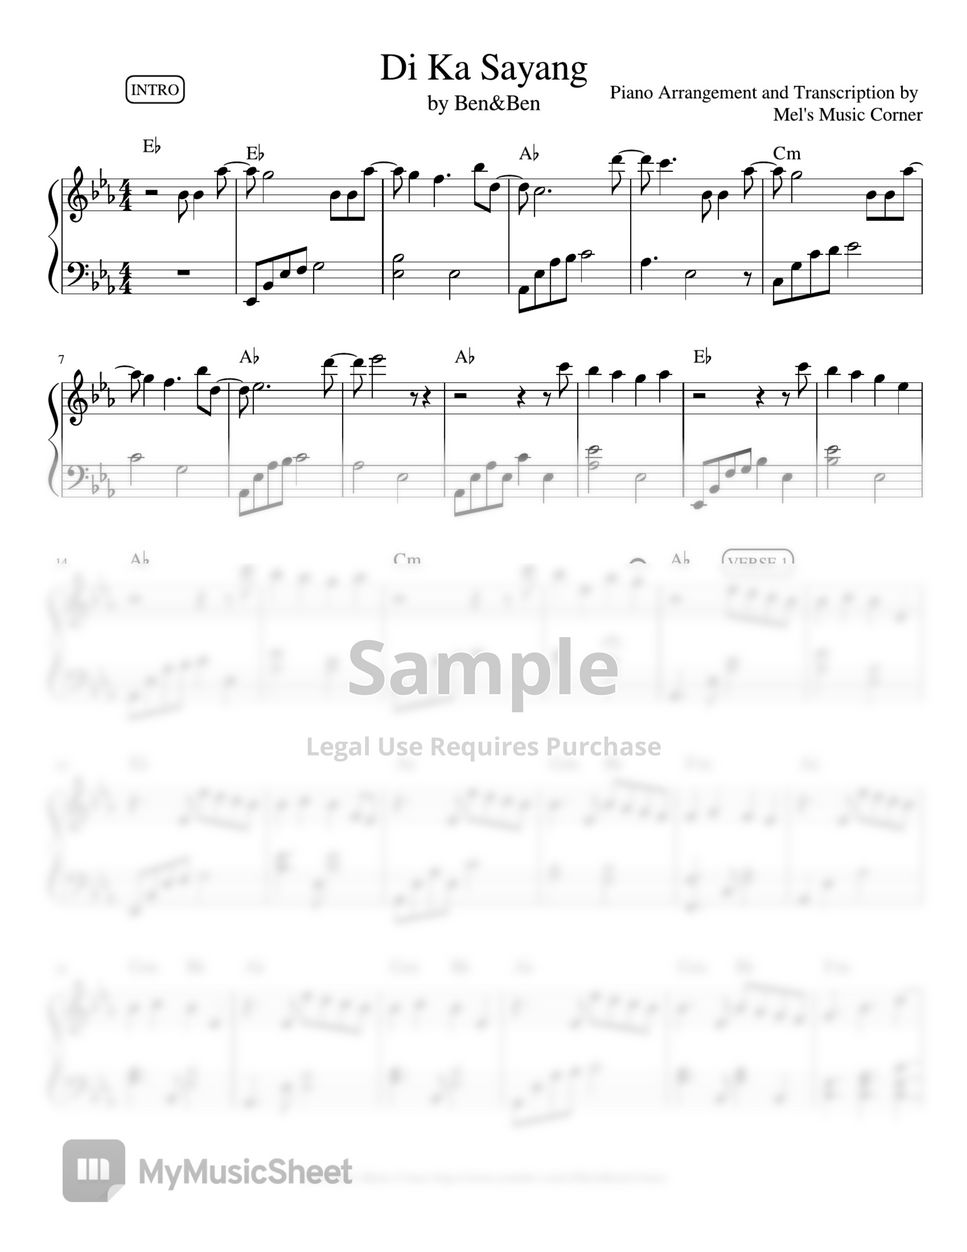 Ben&Ben - Di Ka Sayang (piano sheet music) by Mel's Music Corner